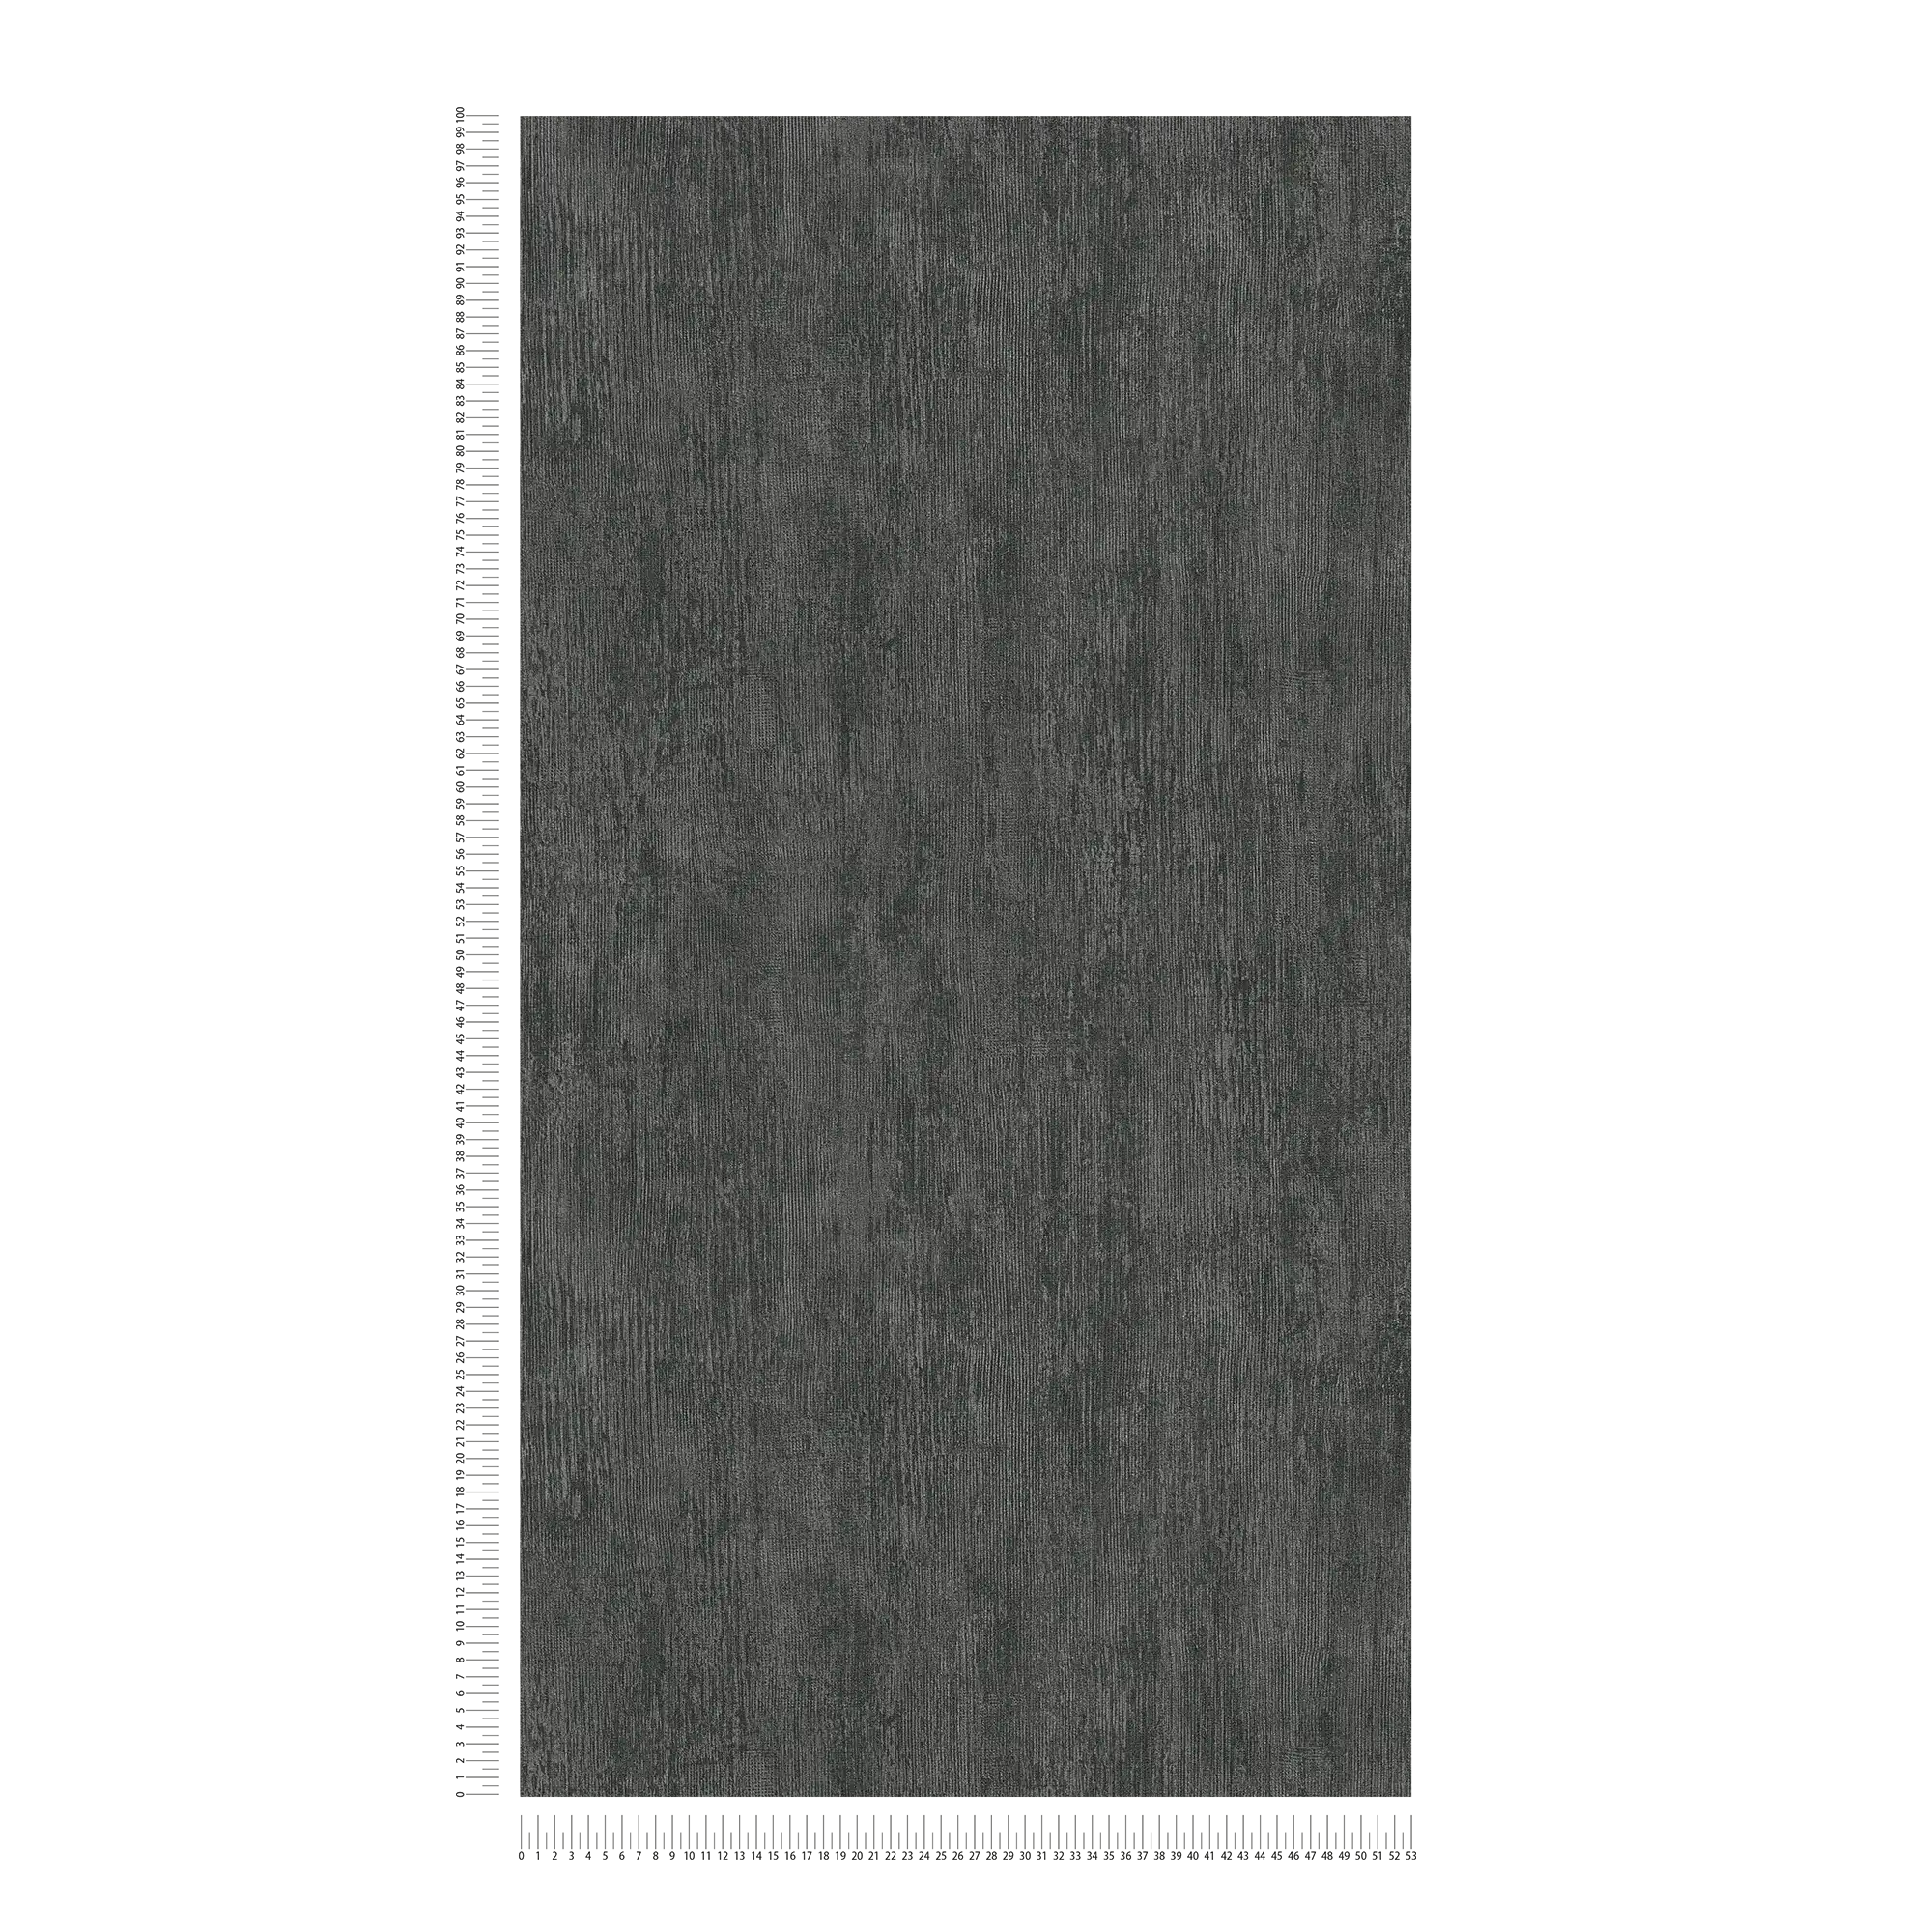             Metal wallpaper with rustic design - grey, black
        